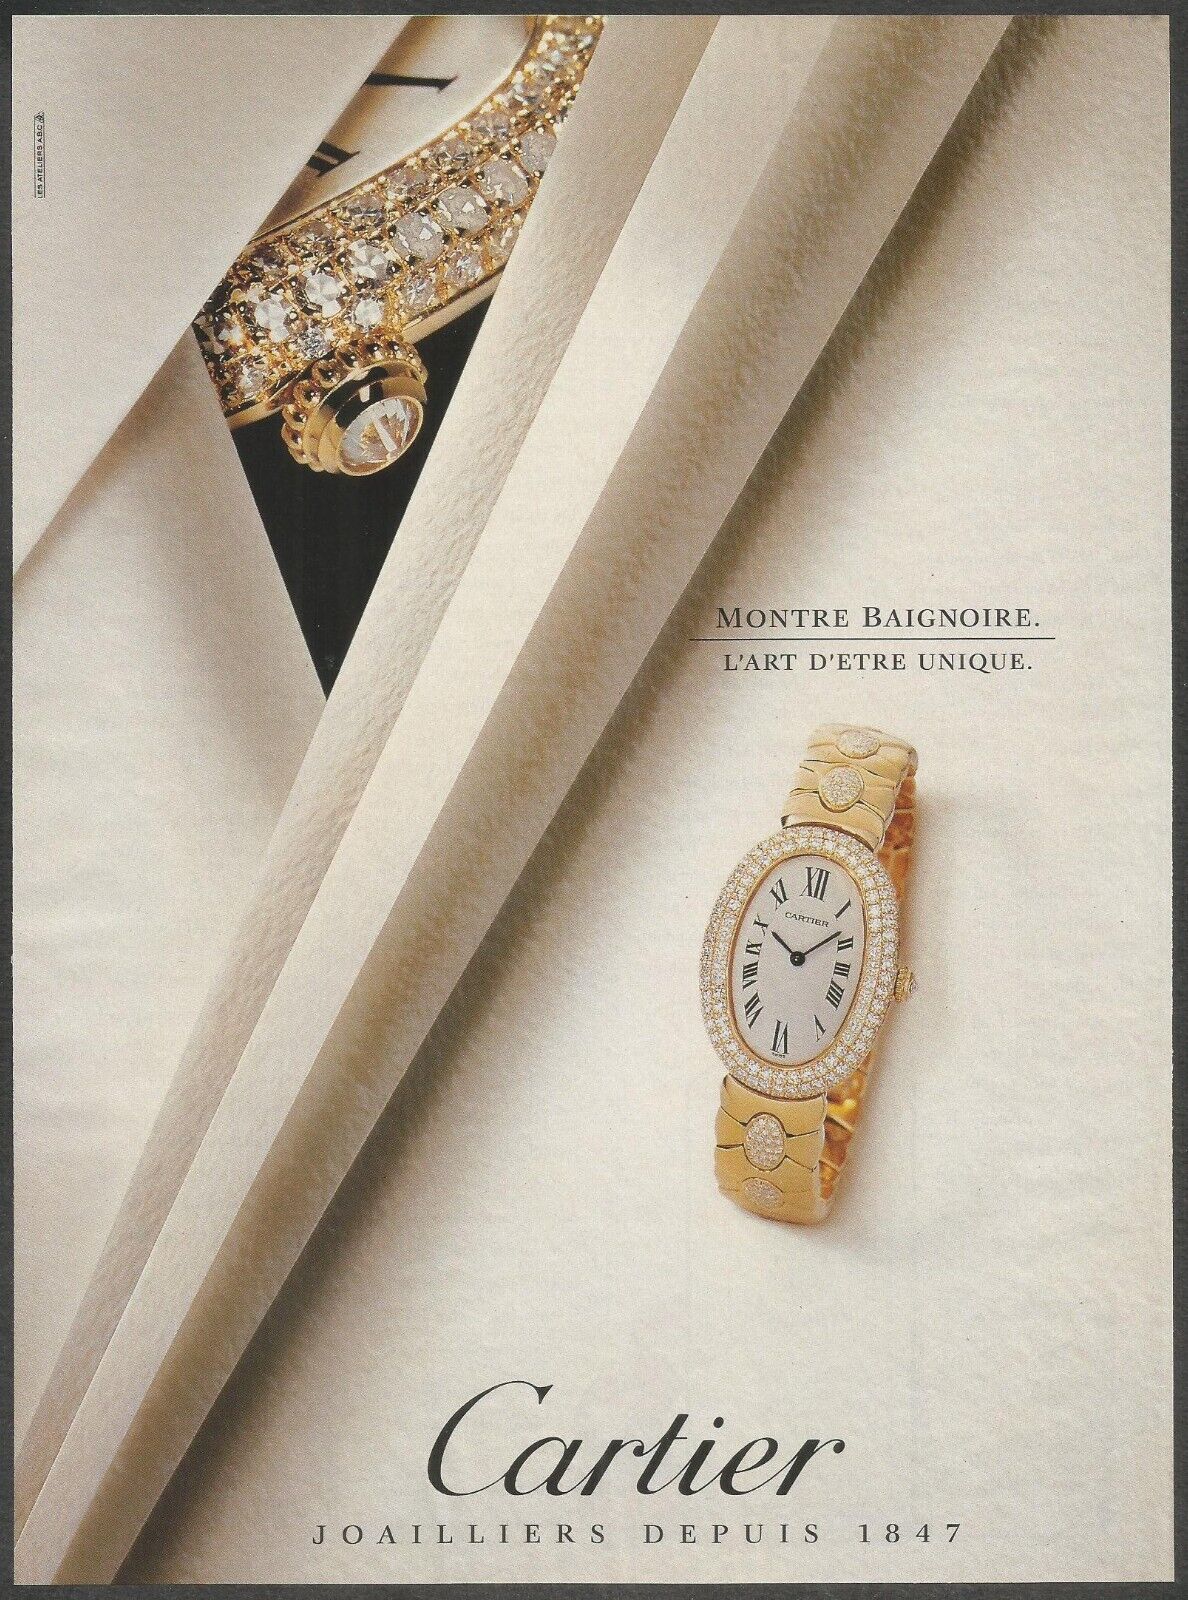 CARTIER , MONTRE BAIGNOIRE - 1992 Vintage Print Ad